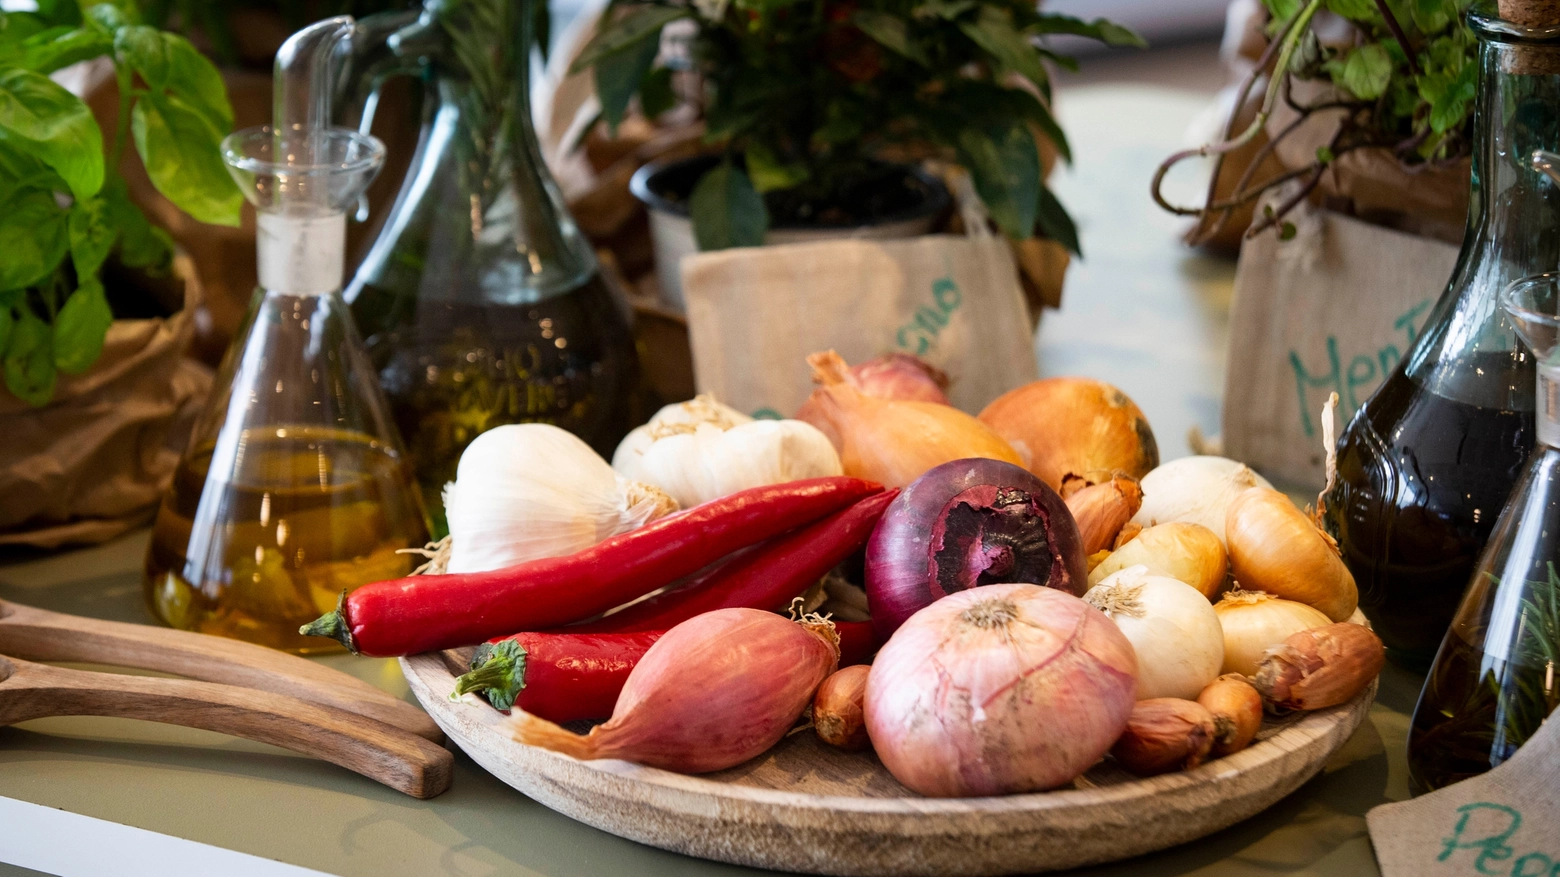 La lavorazione di ingredienti genuini è una delle chiavi del successo dei locali nella Top 100 di The Fork